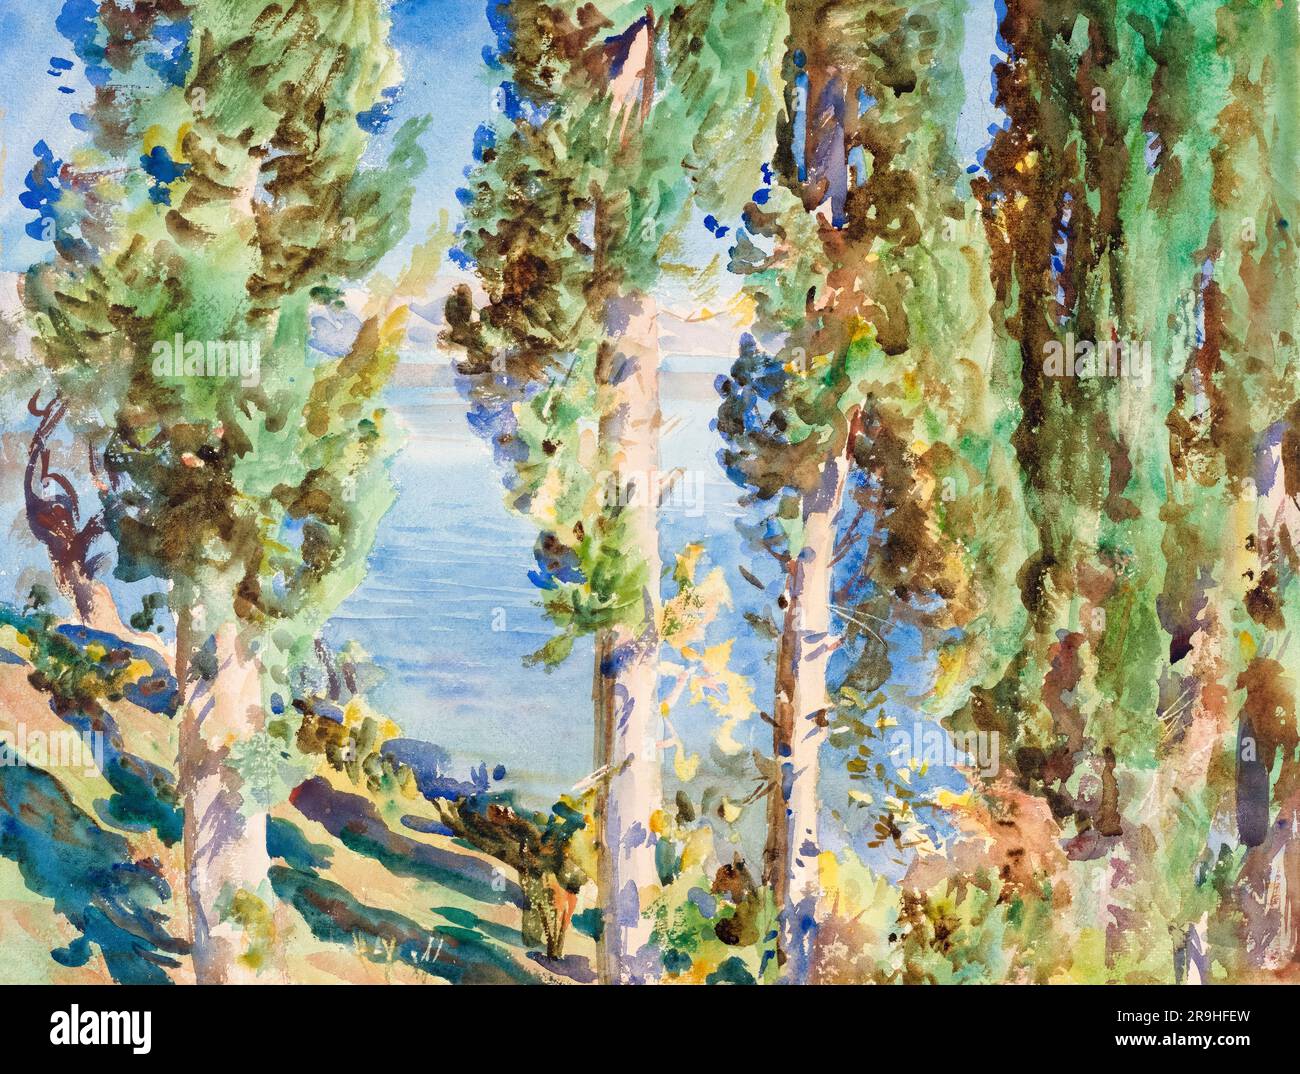 John Singer Sargent, Corfou : cyprès, peinture de paysage à l'aquarelle, 1909 Banque D'Images